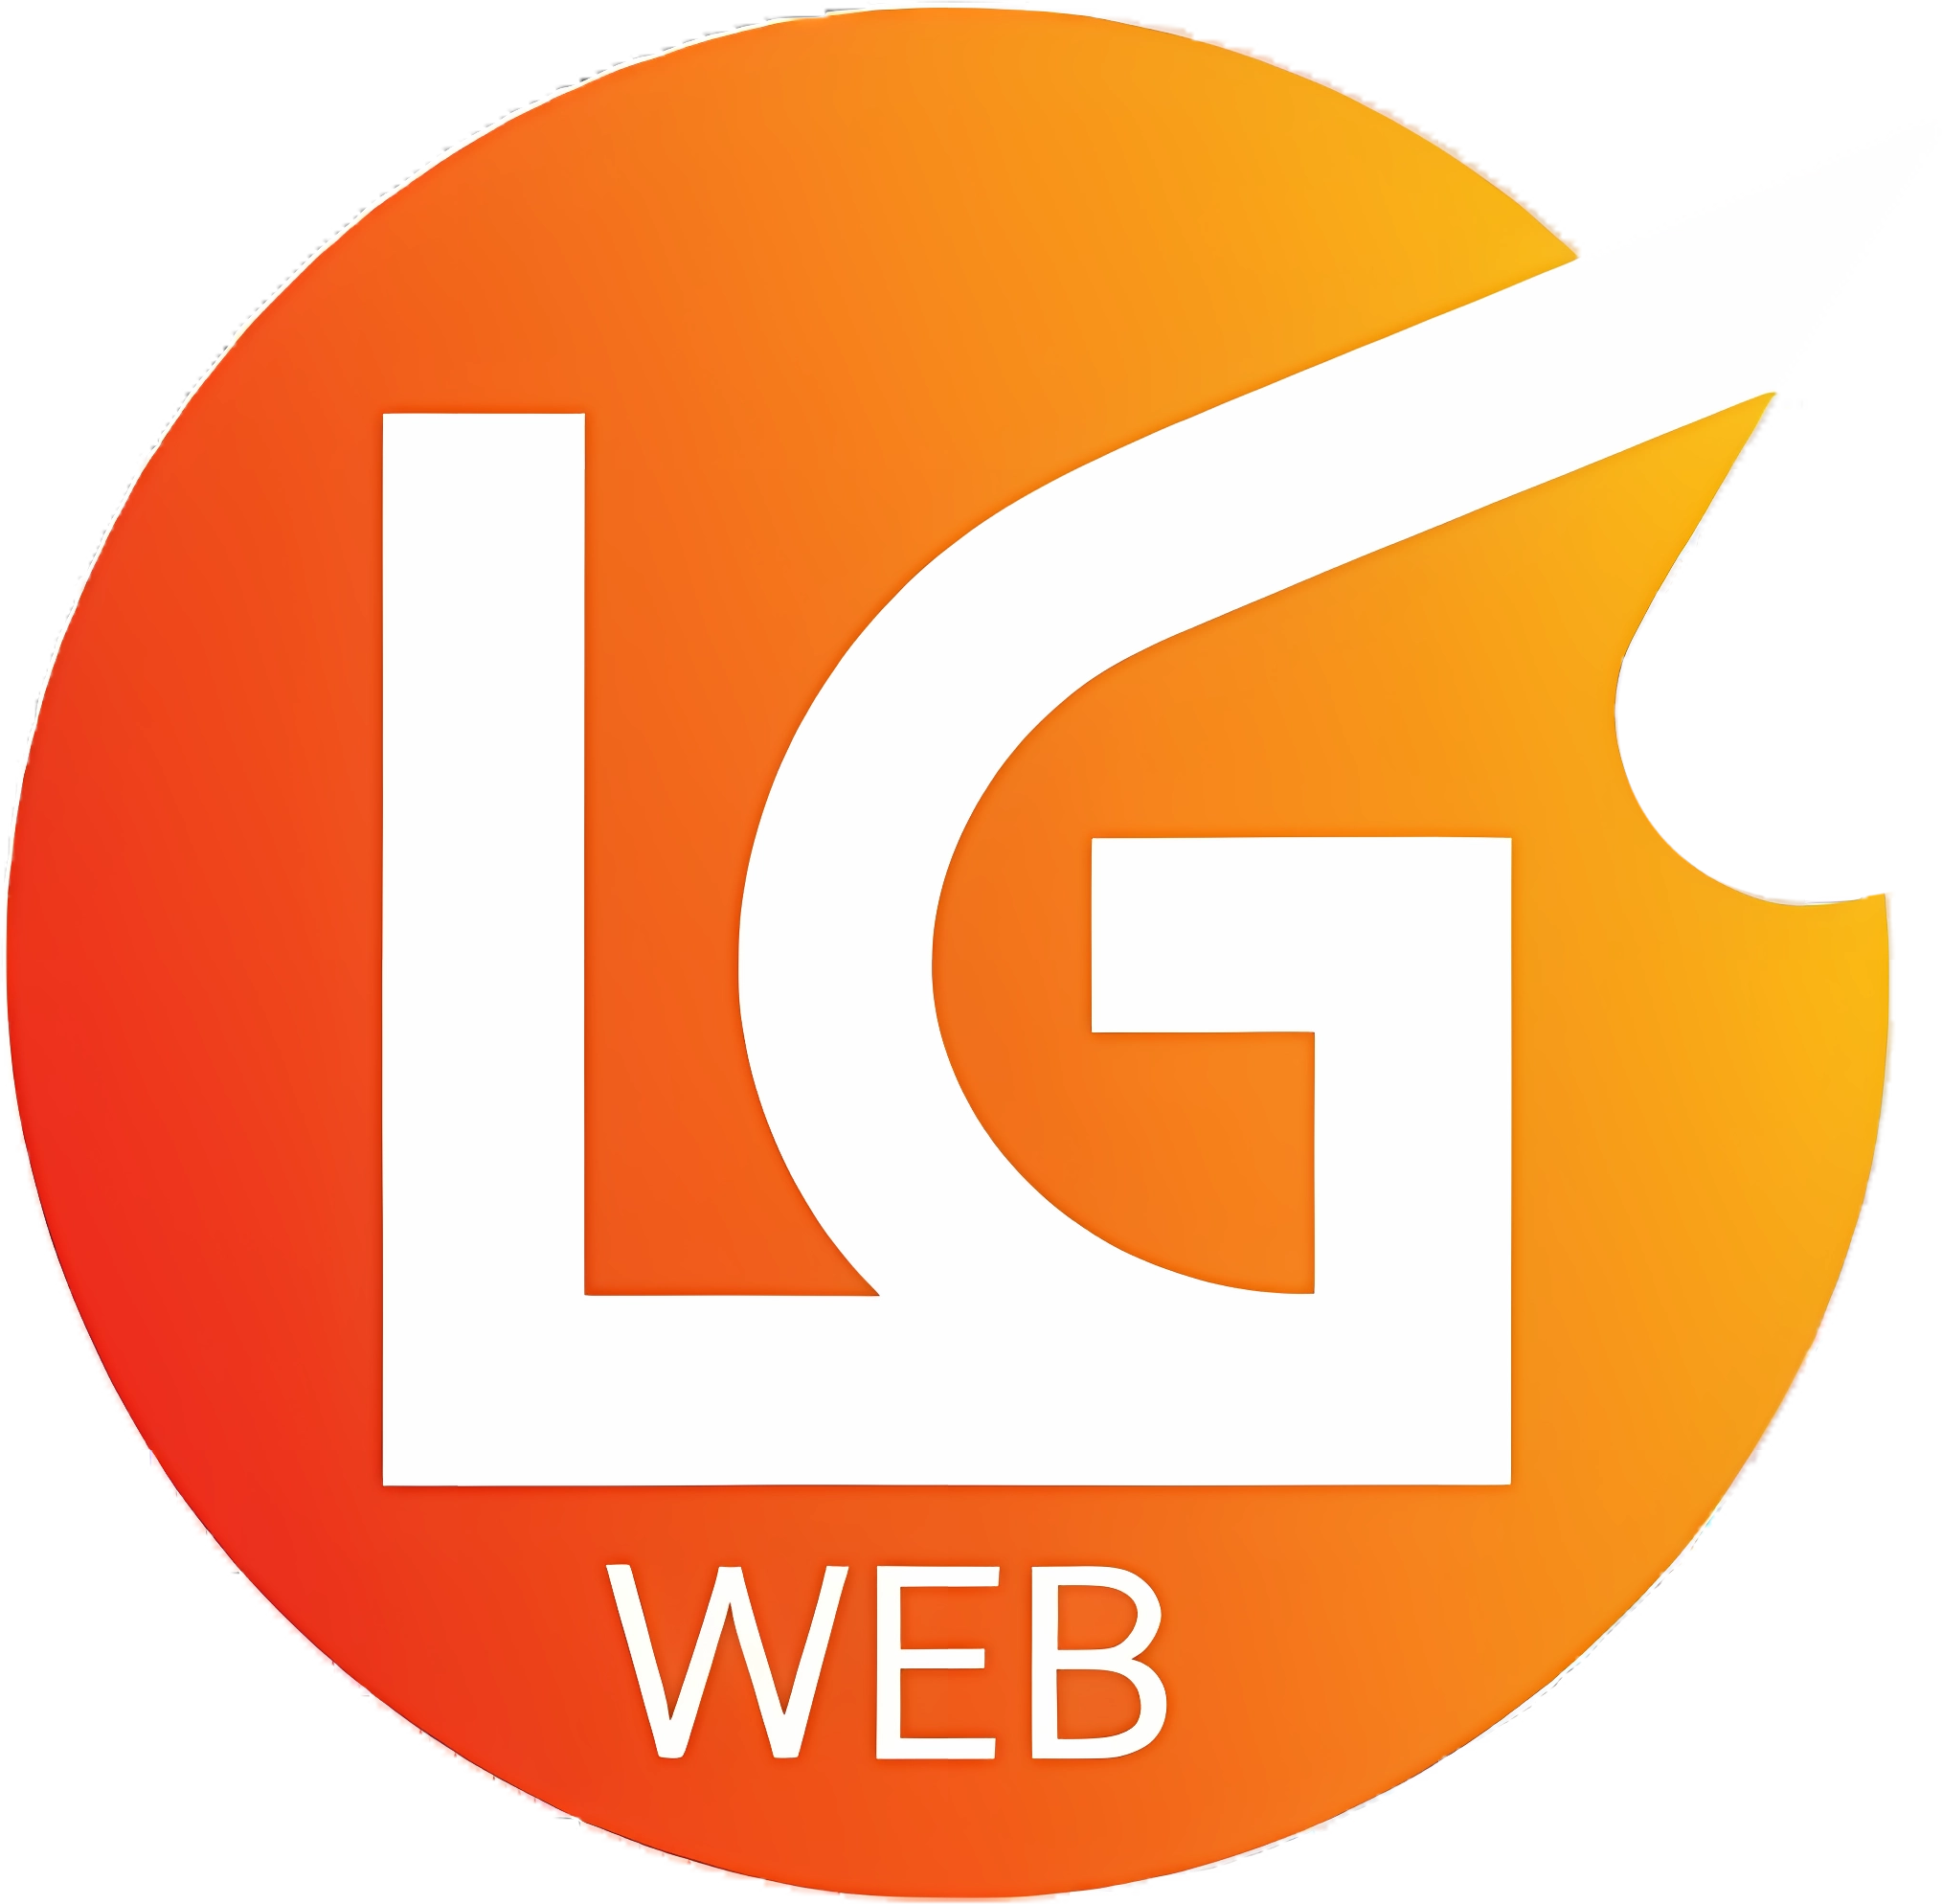 LG Web